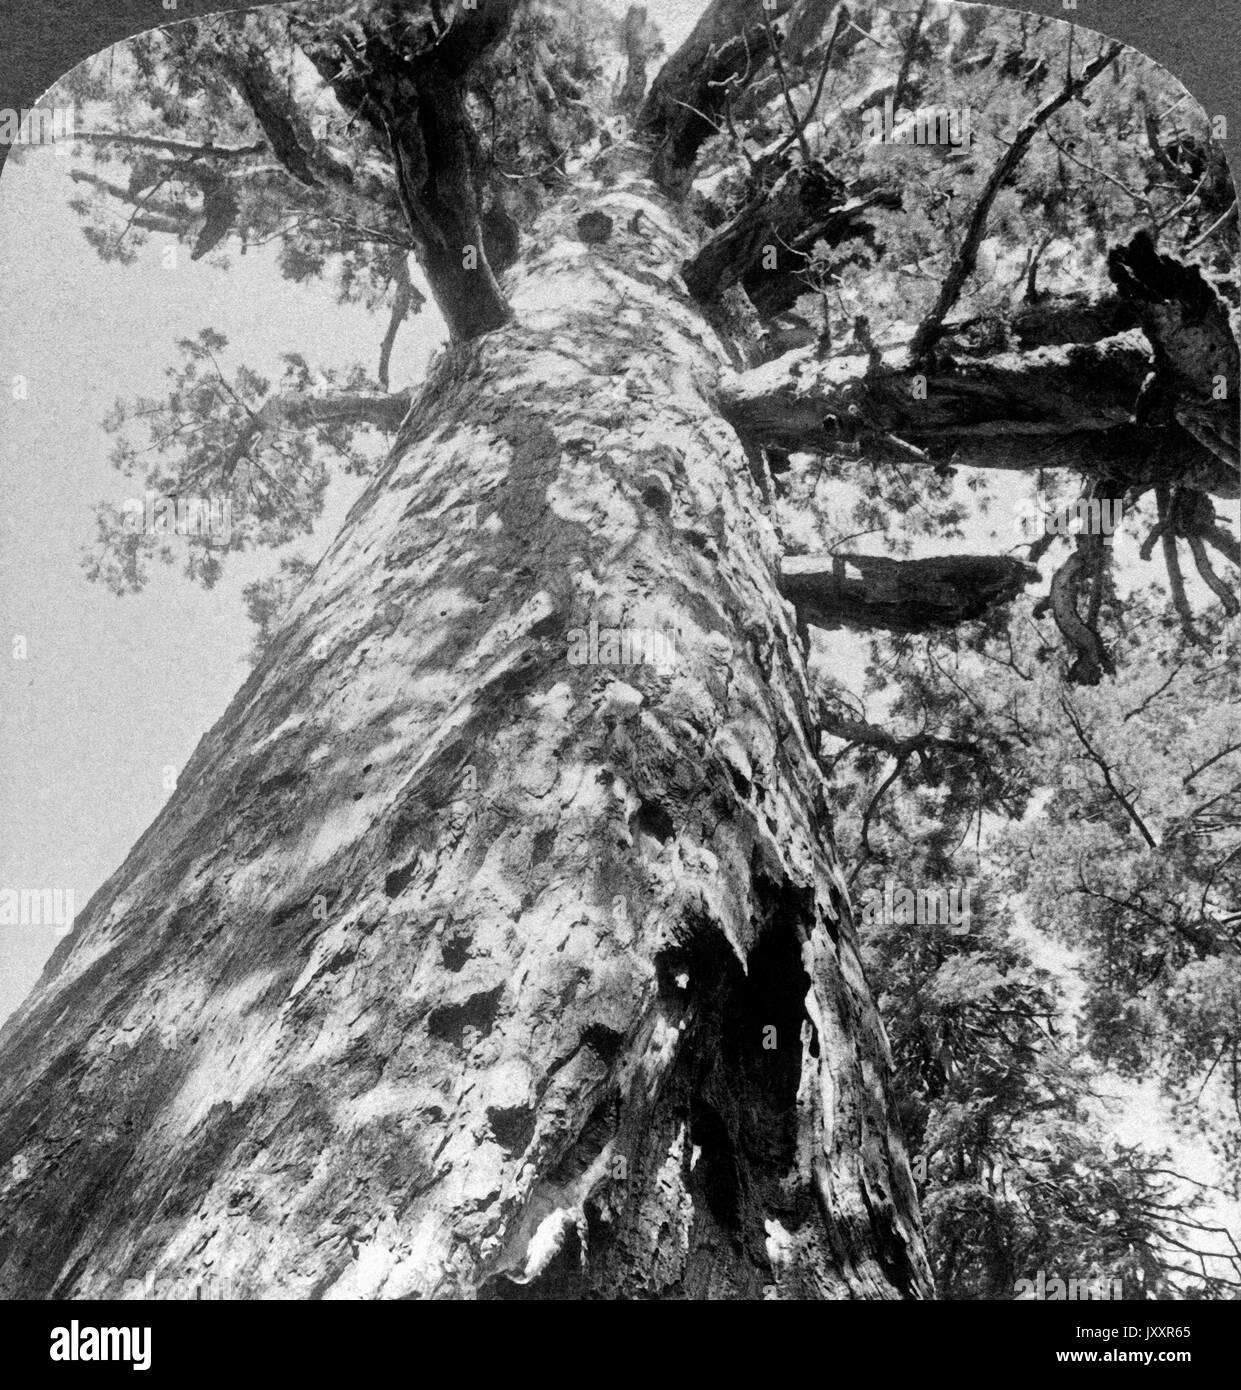 Werft den Kopf zurück und schaut auf zum'Grizzly Giant", Mariposa Grove, Kalifornien, USA 1902. Kopf zurück werfen und bis zu 'Grizzly Giant look" in Mariposa Grove, Kalifornien, USA 1902. Stockfoto